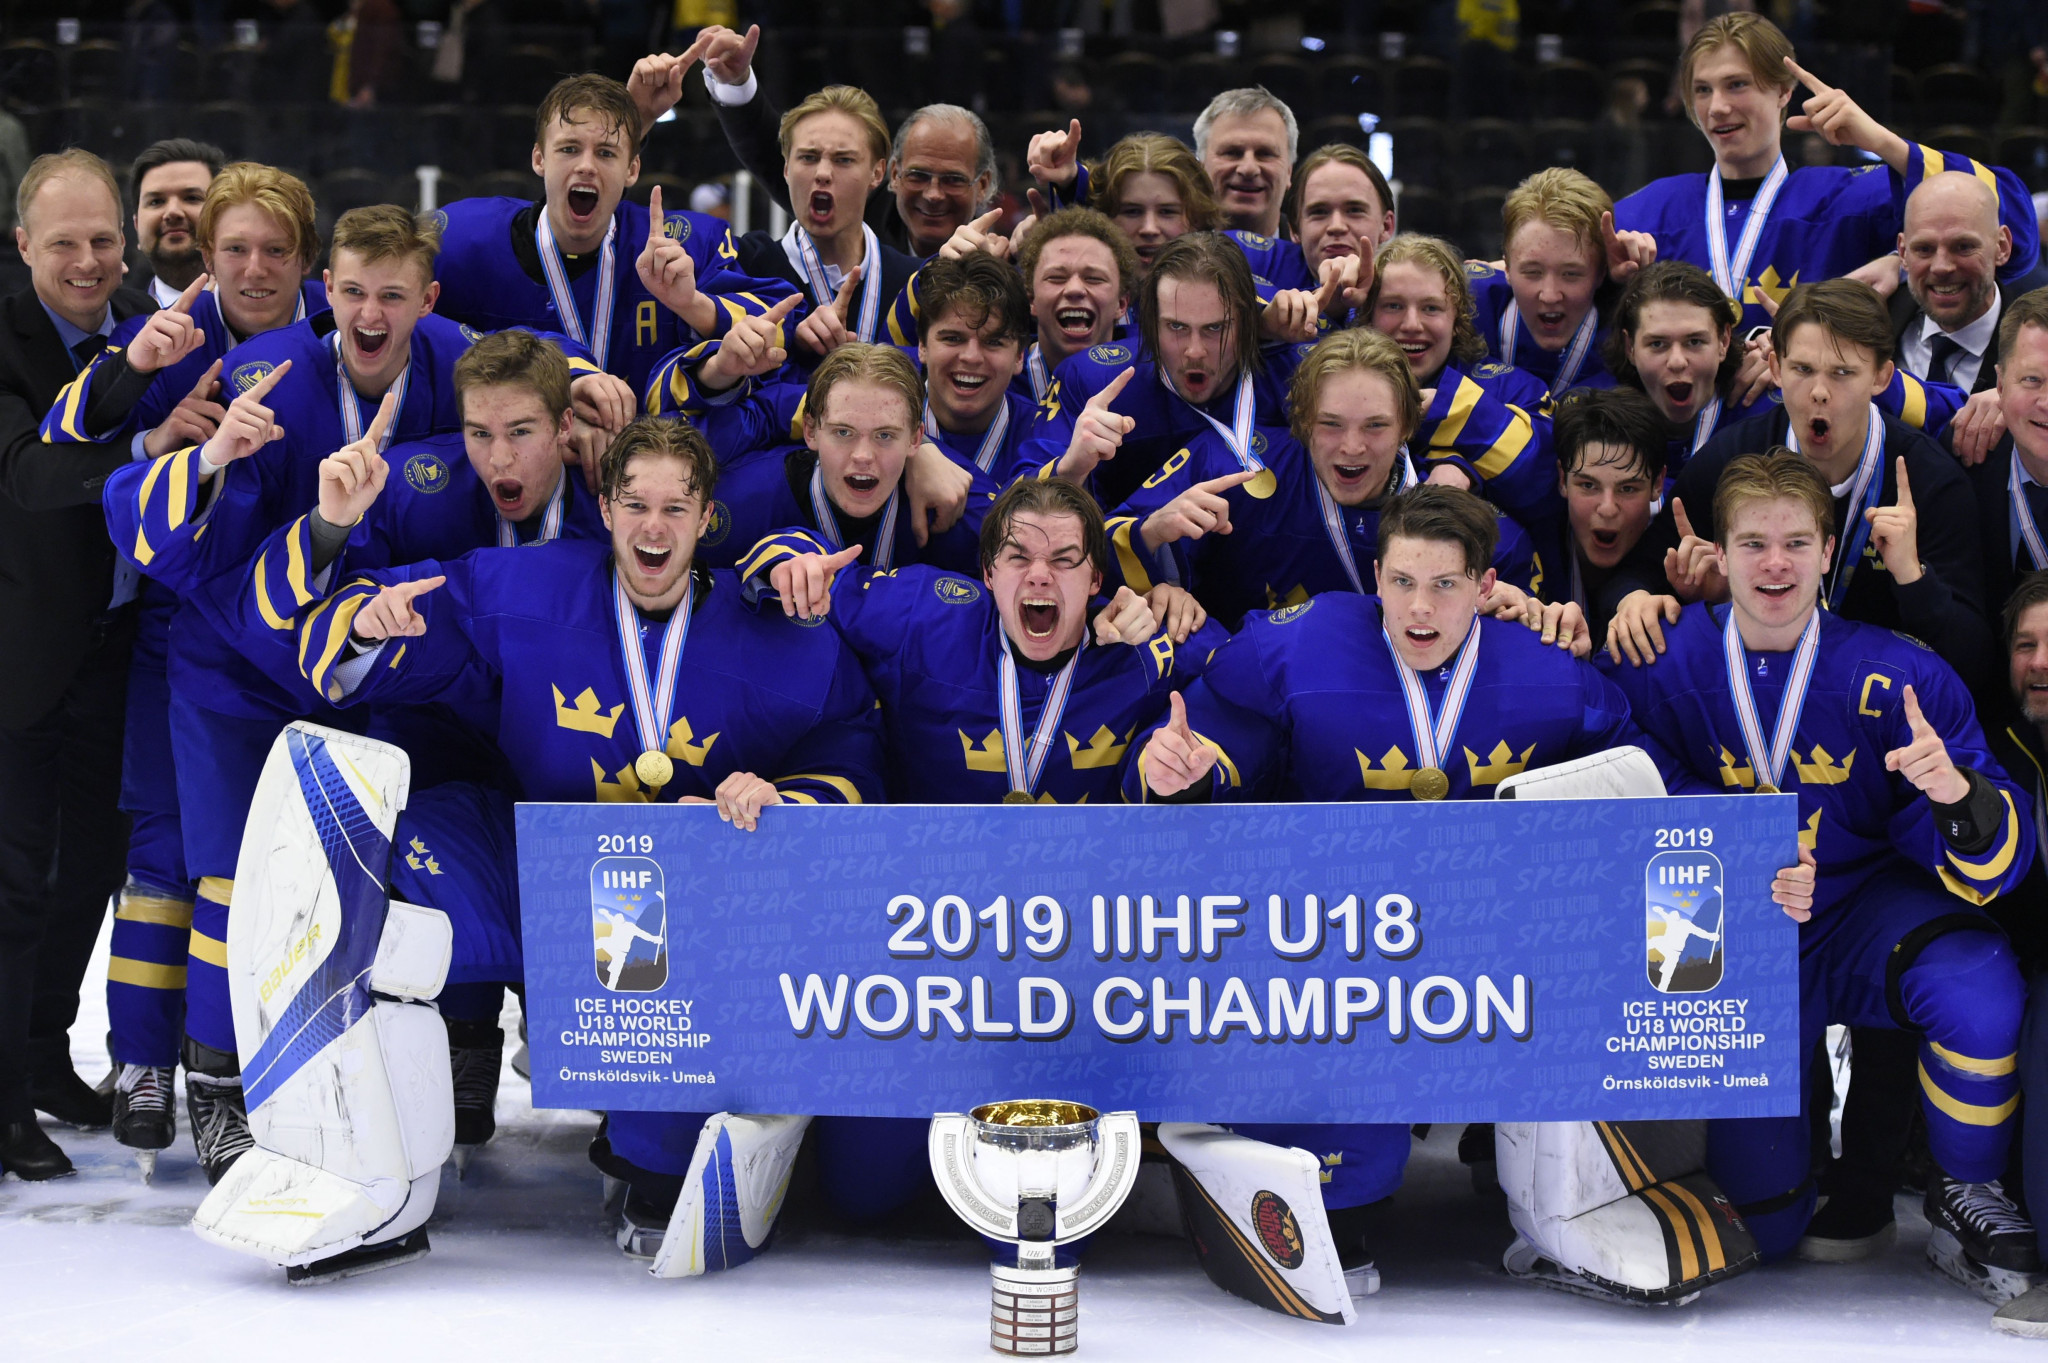 Zviedrija uzvarēja pēdējā pasaules U-18 čempionātā IIHF © Getty Images